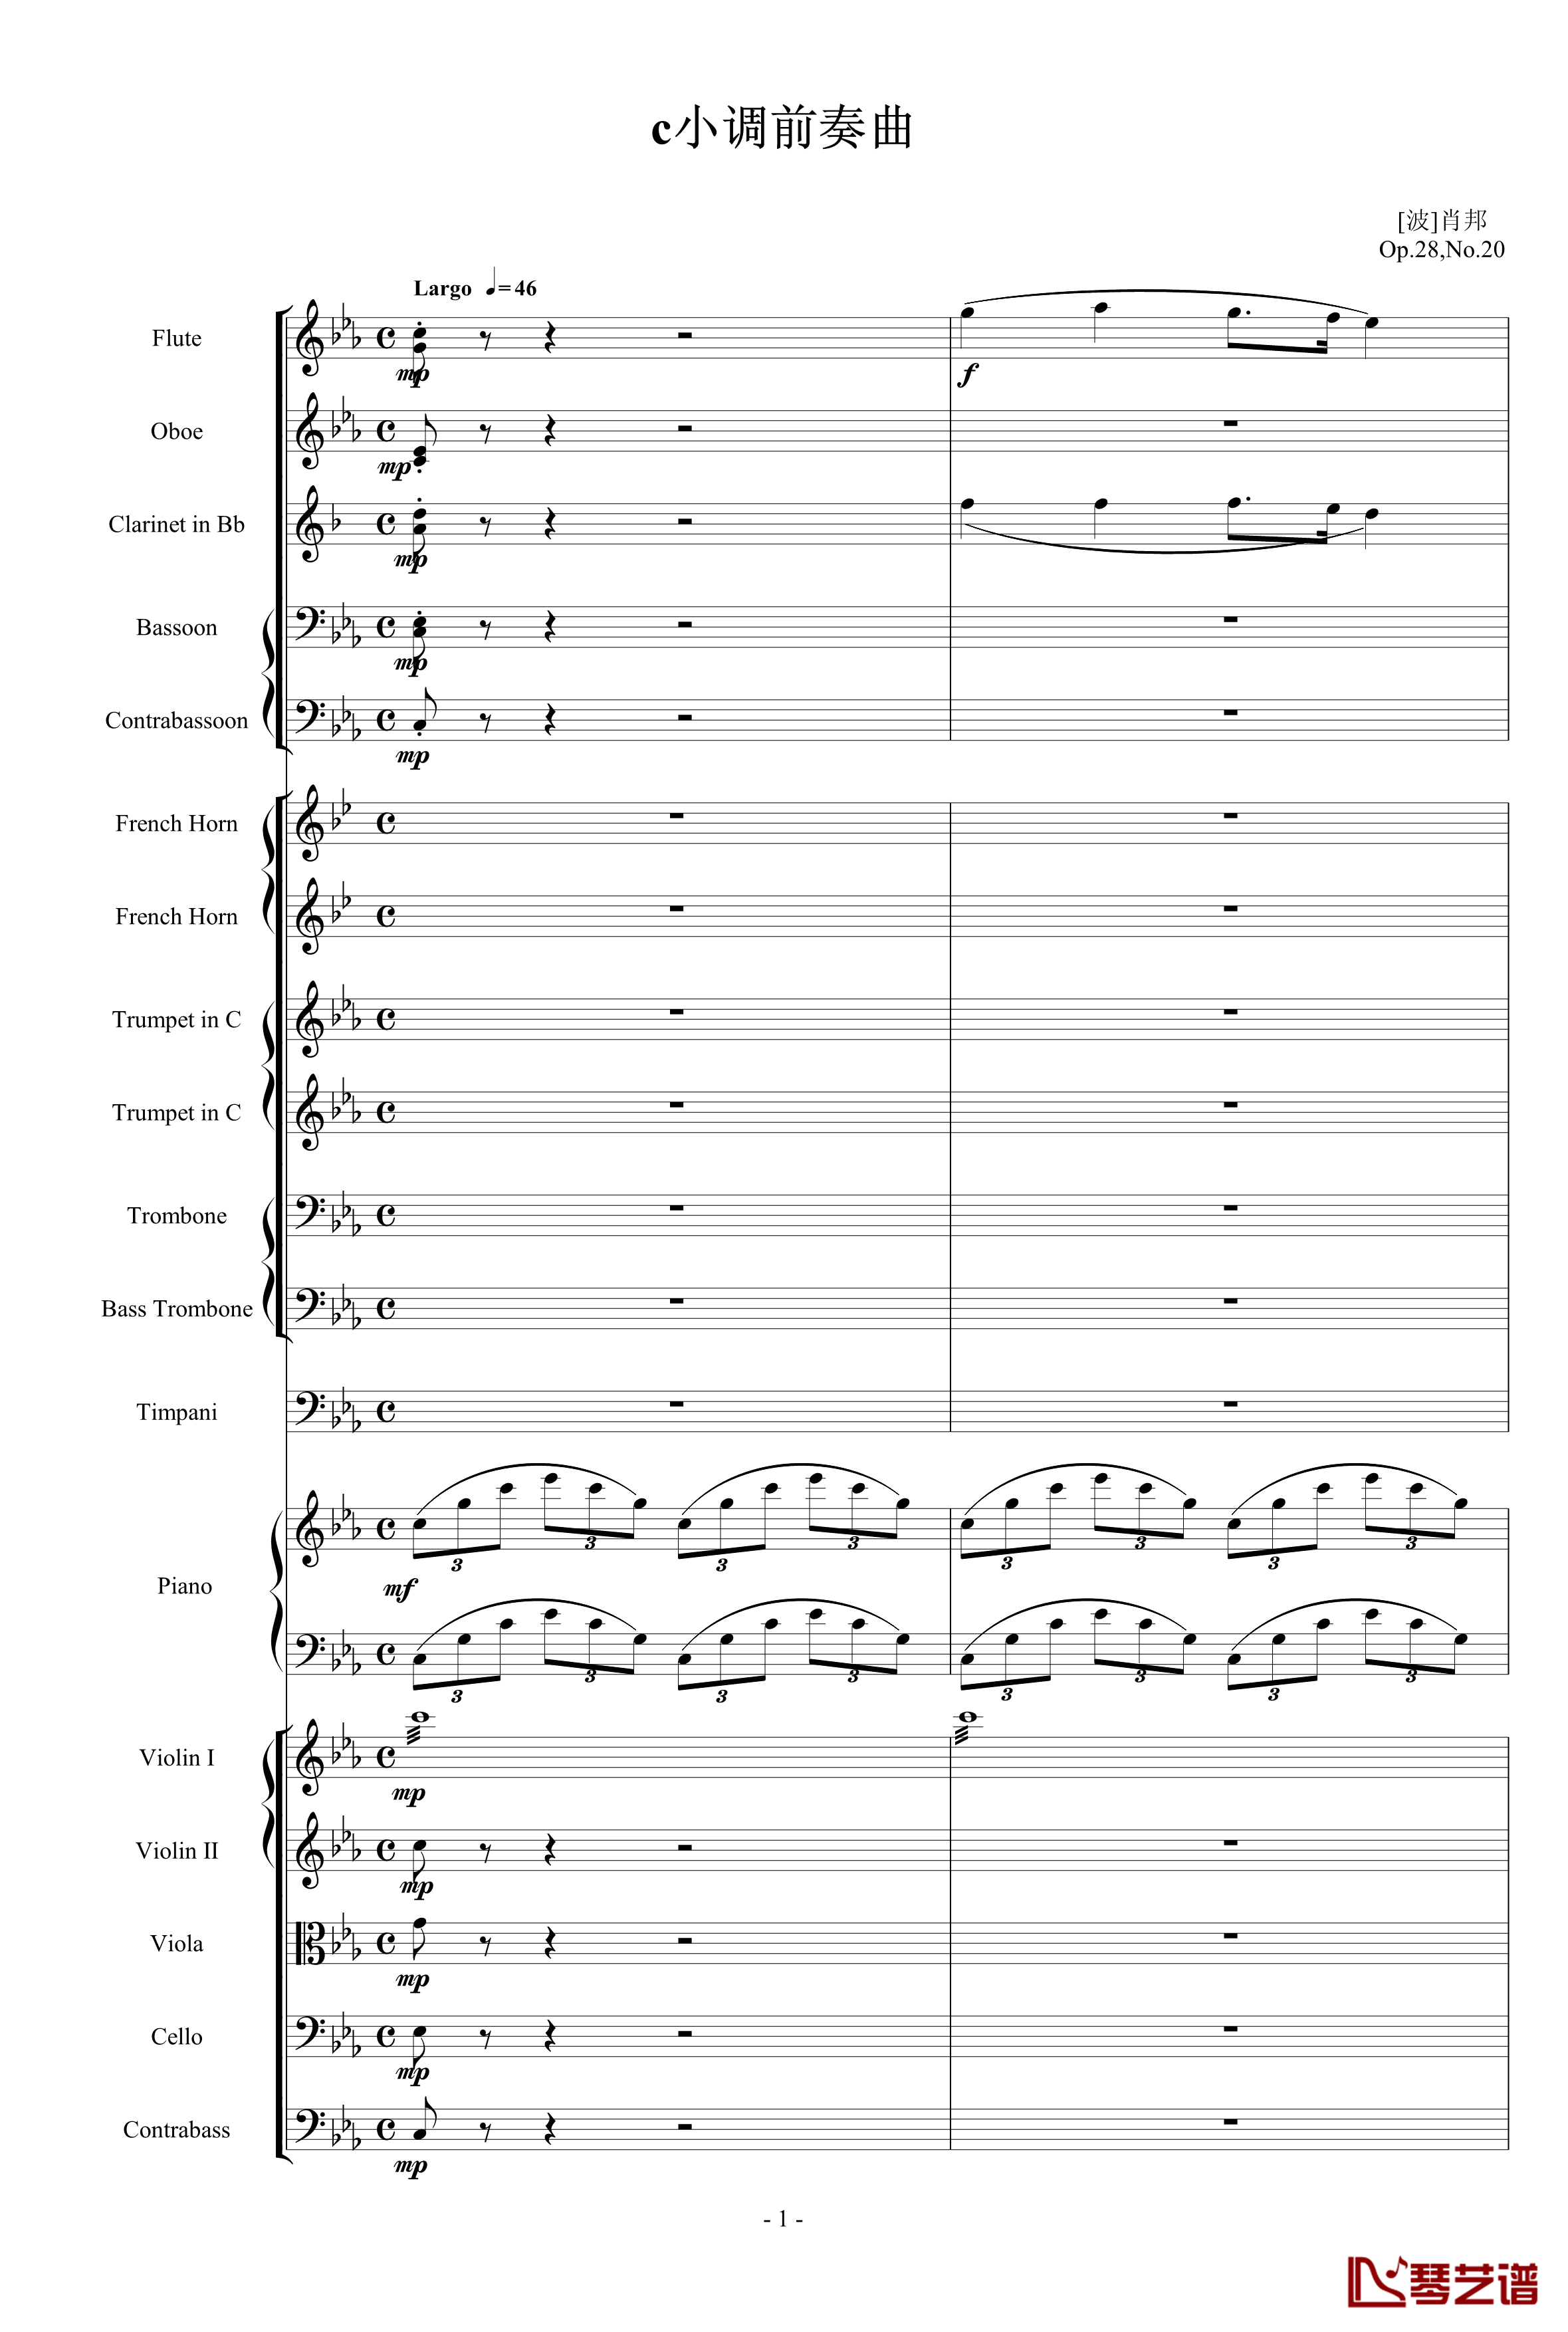 悲催的C小调前奏曲钢琴谱-管弦乐版-肖邦-chopin1